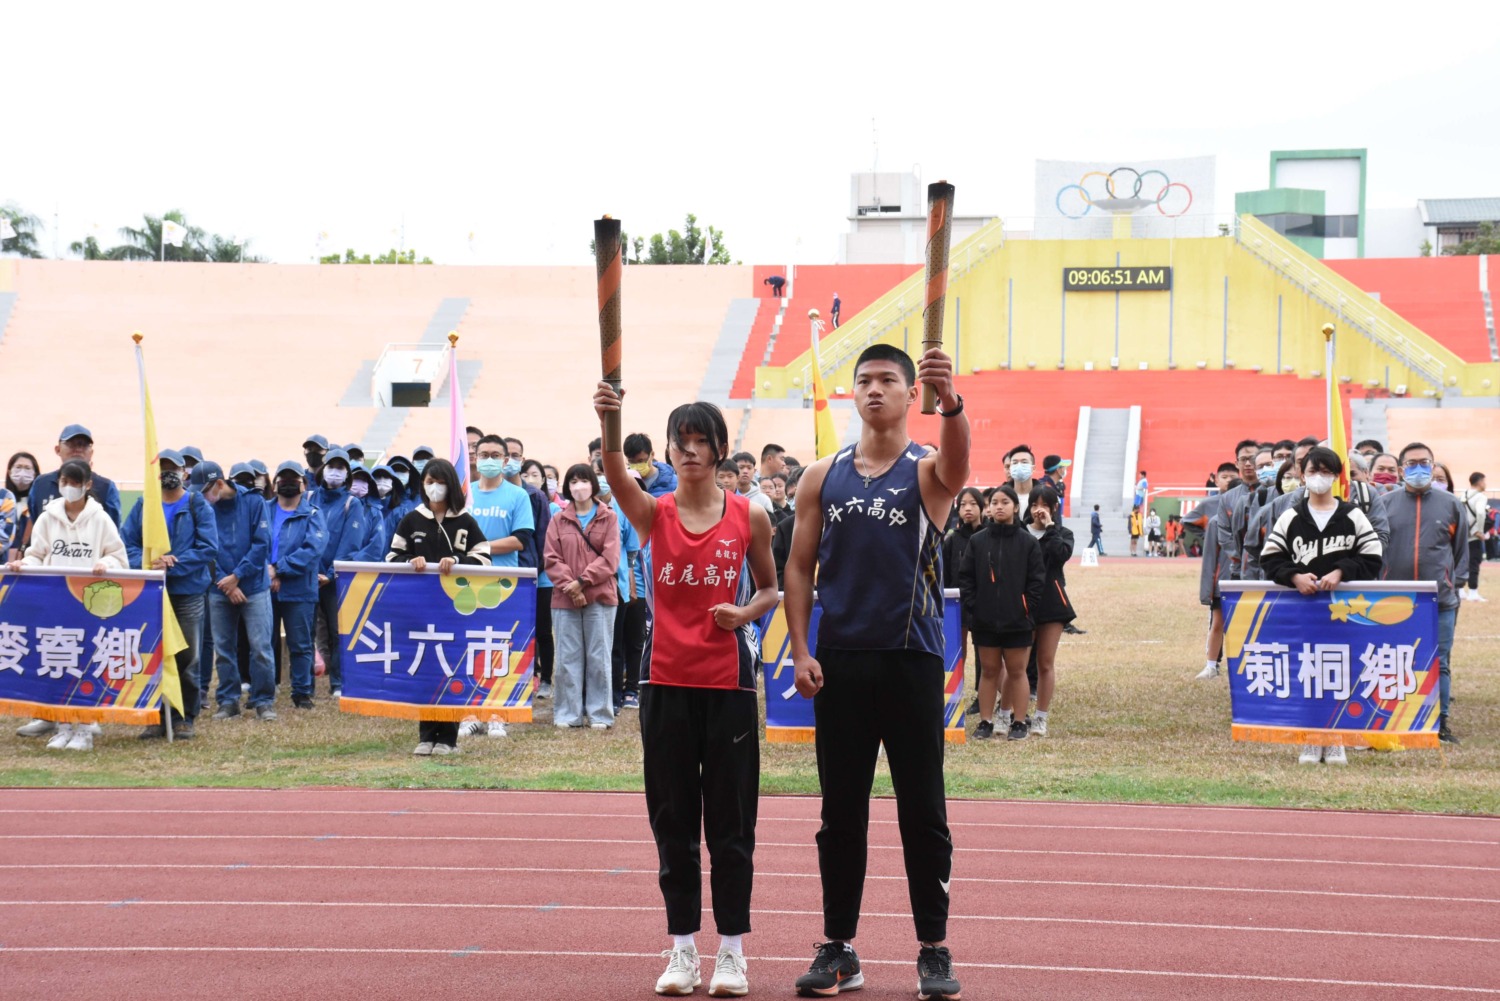 雲林縣中小學聯合運動會熱鬧開幕　千名選手同場競技